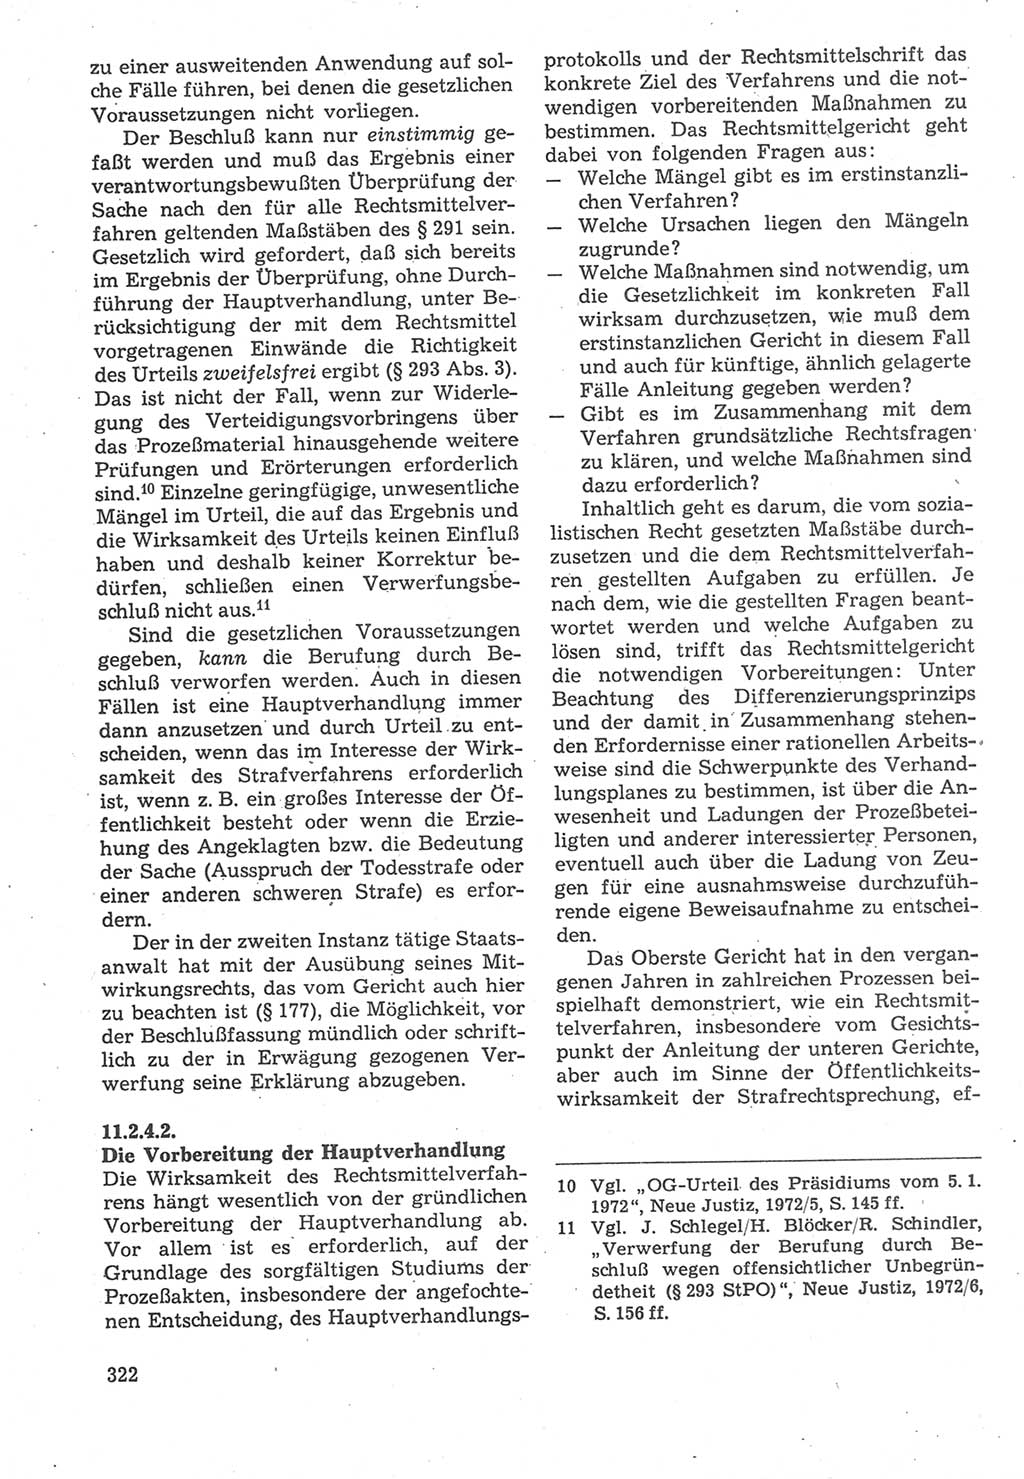 Strafverfahrensrecht [Deutsche Demokratische Republik (DDR)], Lehrbuch 1987, Seite 322 (Strafverf.-R. DDR Lb. 1987, S. 322)